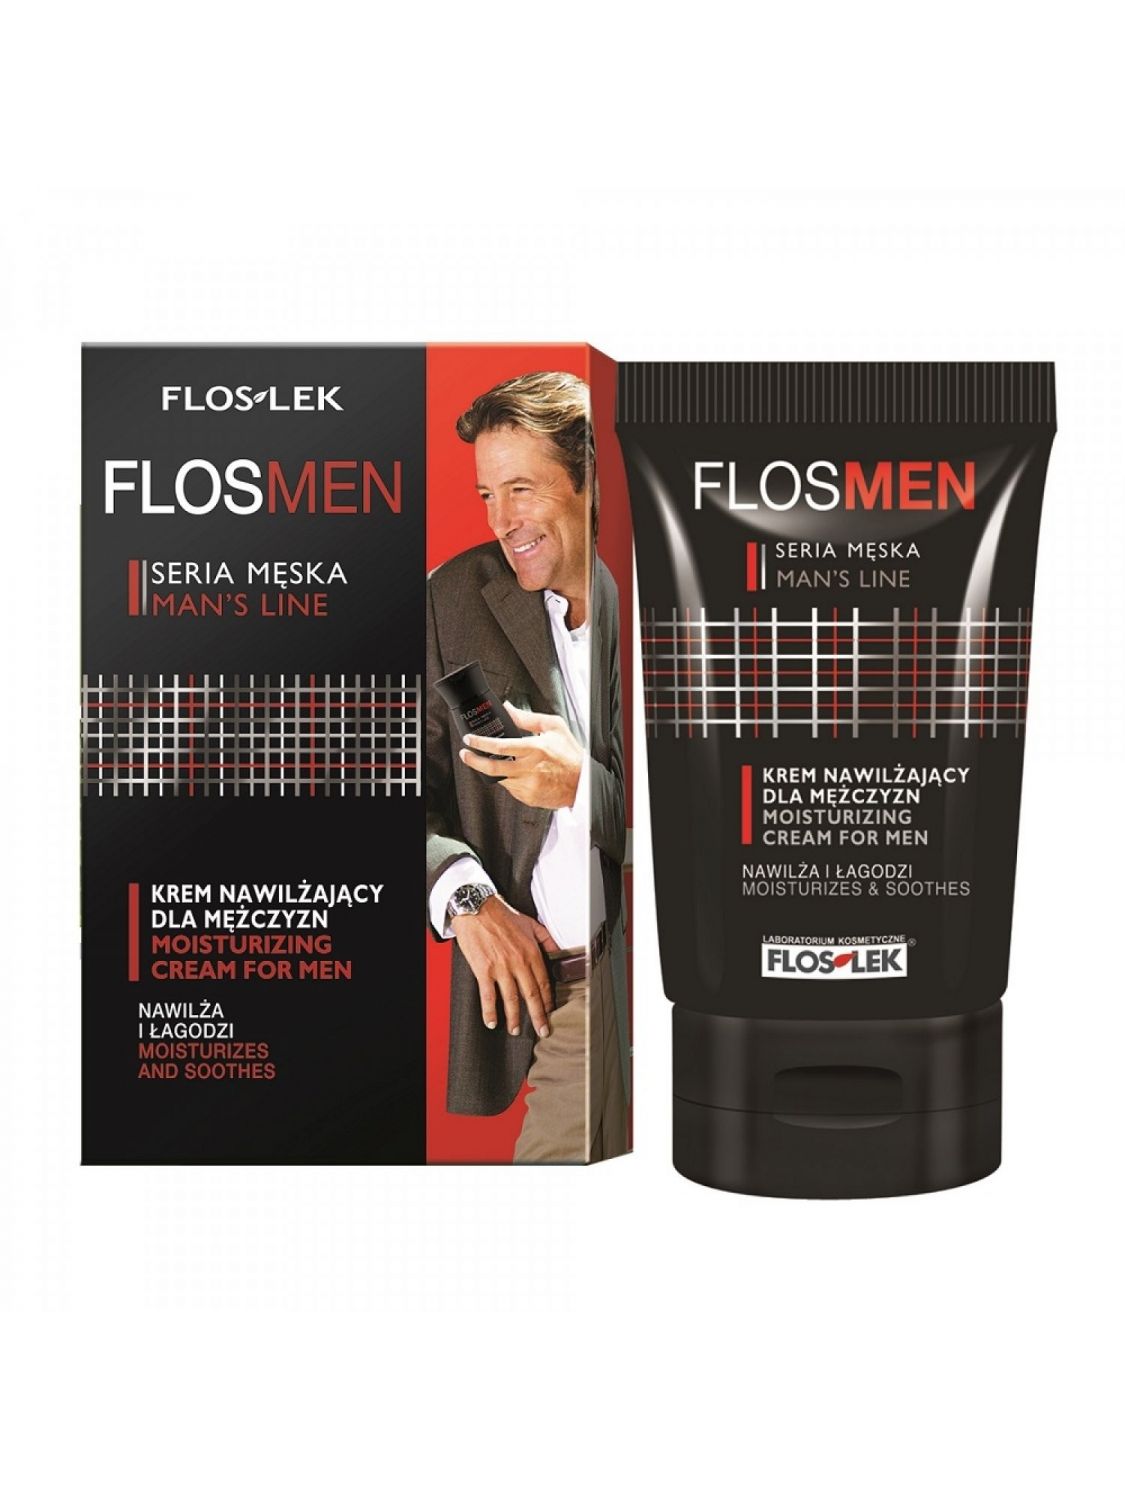 Floslek FLOS MEN hydratační krém pro muže